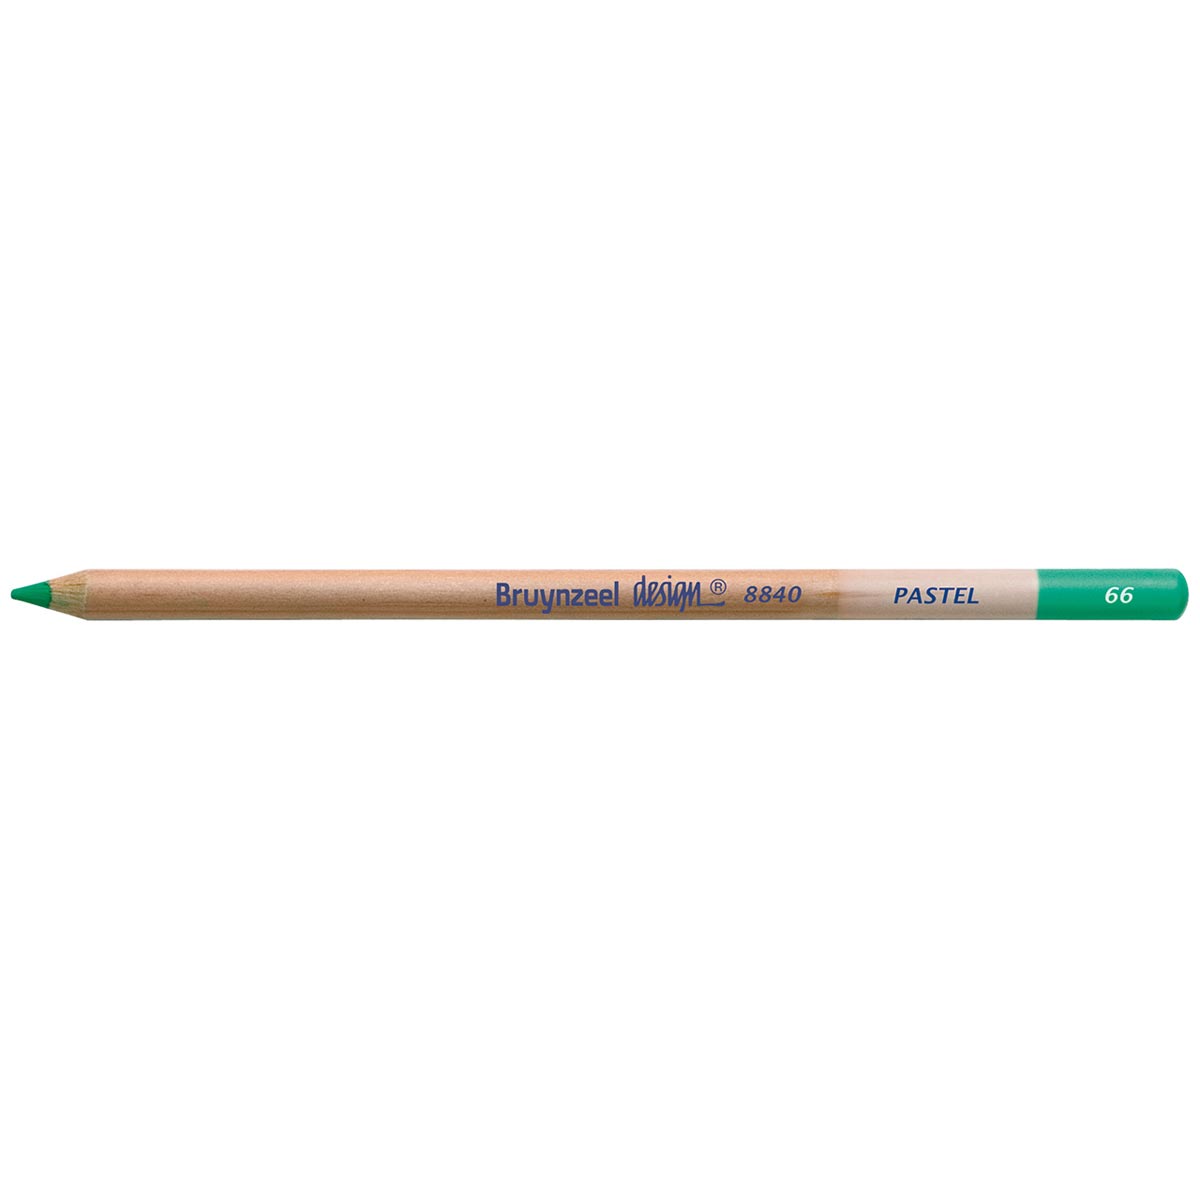 Bruynzeel Design Pastel Pencil - Green 66